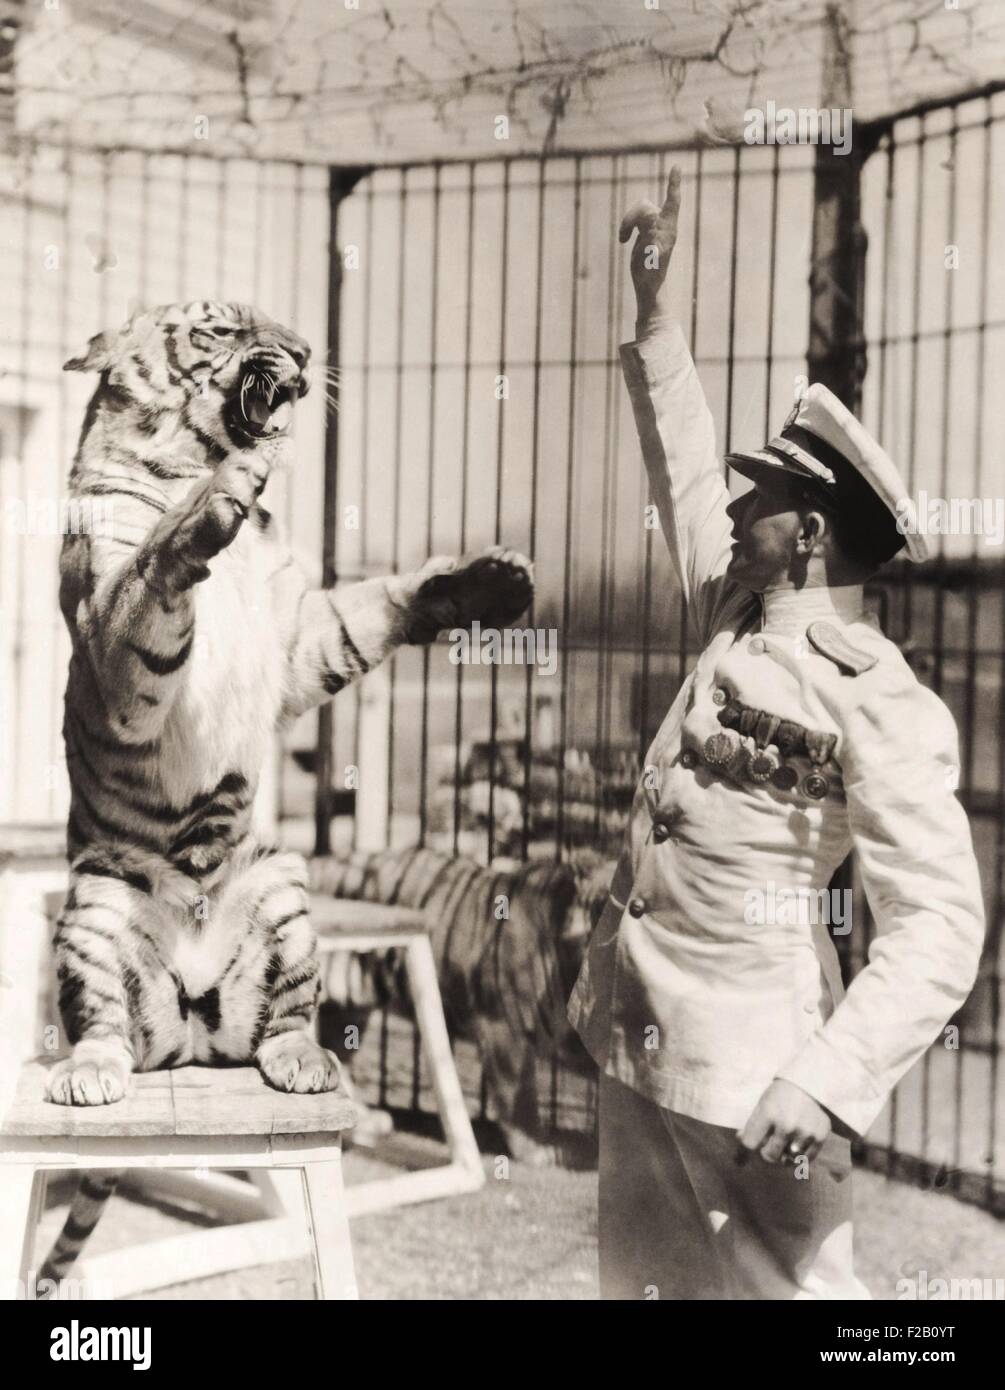 Il cap. Proske romano, un addestratore di animali nato a Vienna nel 1898. A 13 anni egli corse lontano da casa per entrare nel circus. Egli domato e addestrato il suo grande gatti senza usare fruste o sedie. 1938 (CSU 2015 9 1015) Foto Stock